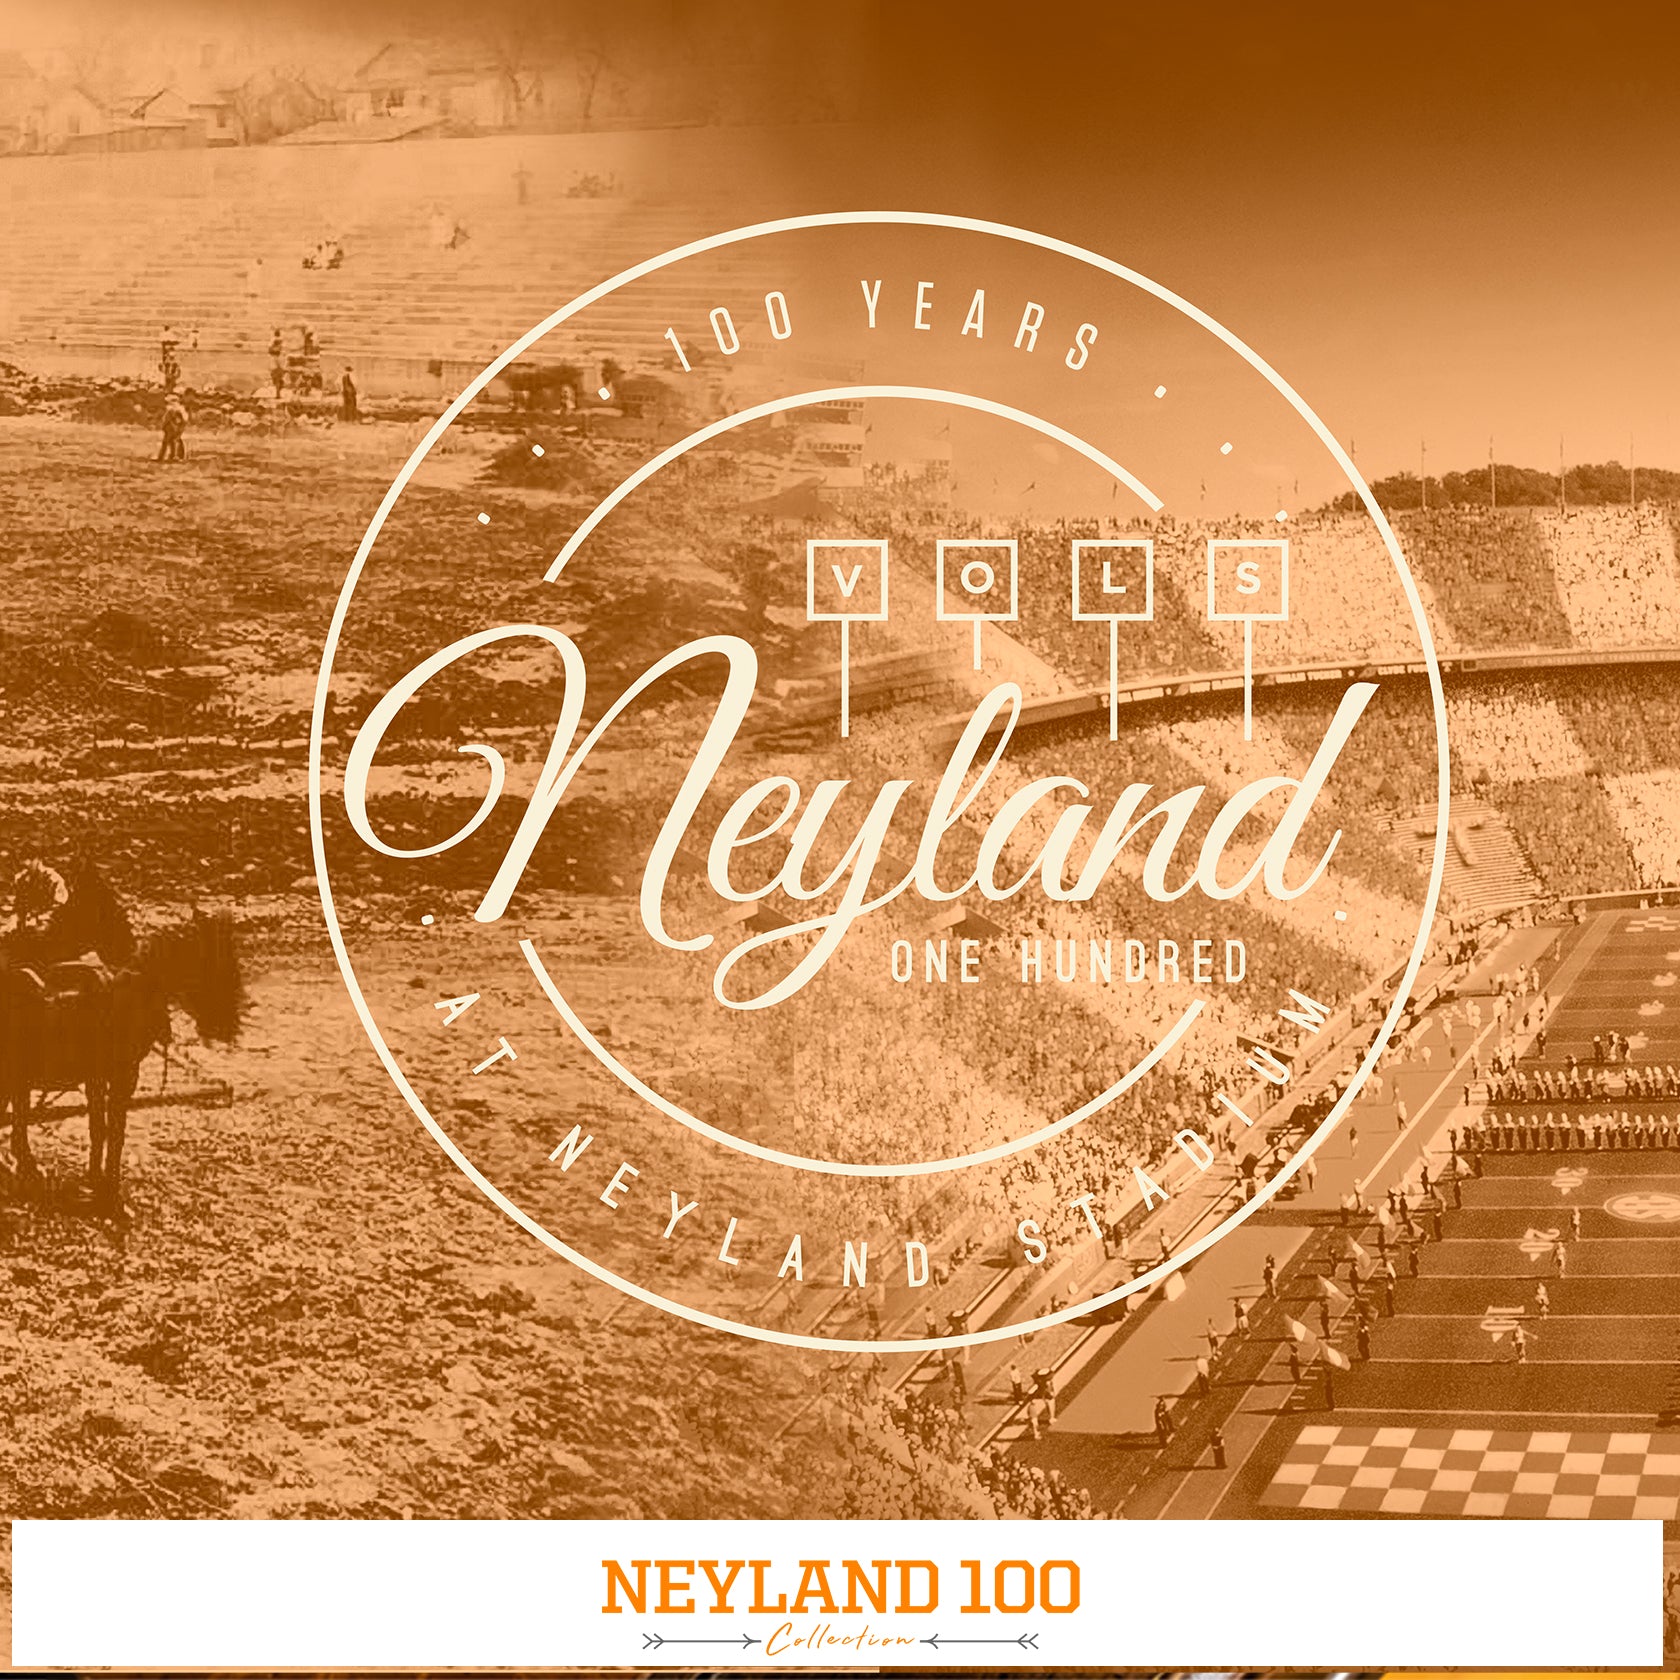 Tennessee Vols - Neyland 100